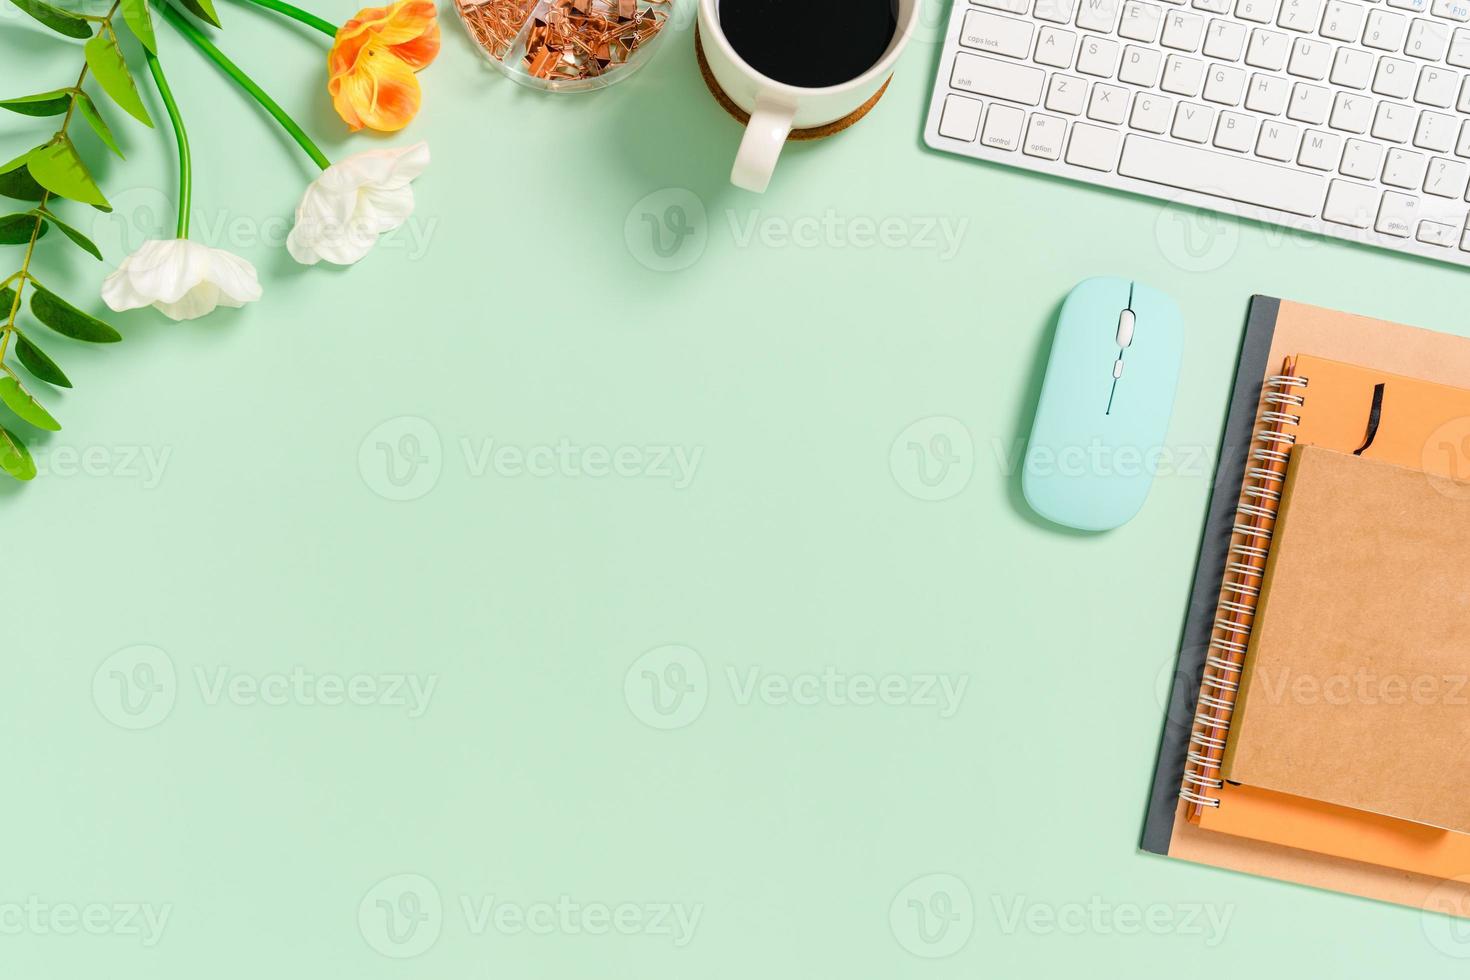 minimalt arbetsutrymme - kreativt plattläggningsfoto av arbetsytans skrivbord. ovanifrån kontorsbord med tangentbord, mus och anteckningsbok på pastellgrön bakgrund. ovanifrån med kopieringsutrymme, plattfotografering. foto